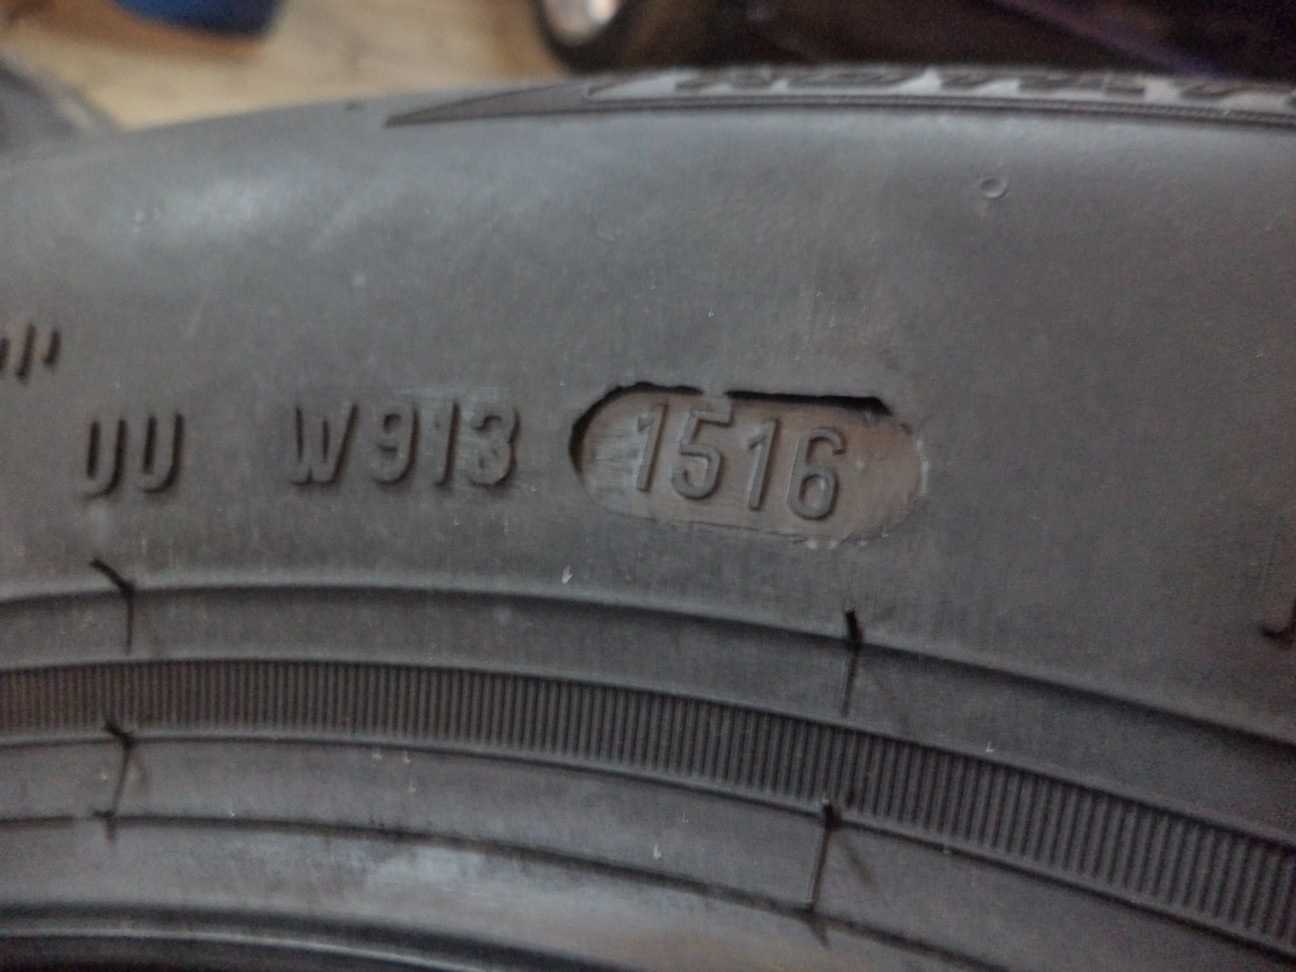 Где на шинах указан год выпуска фото нокиа